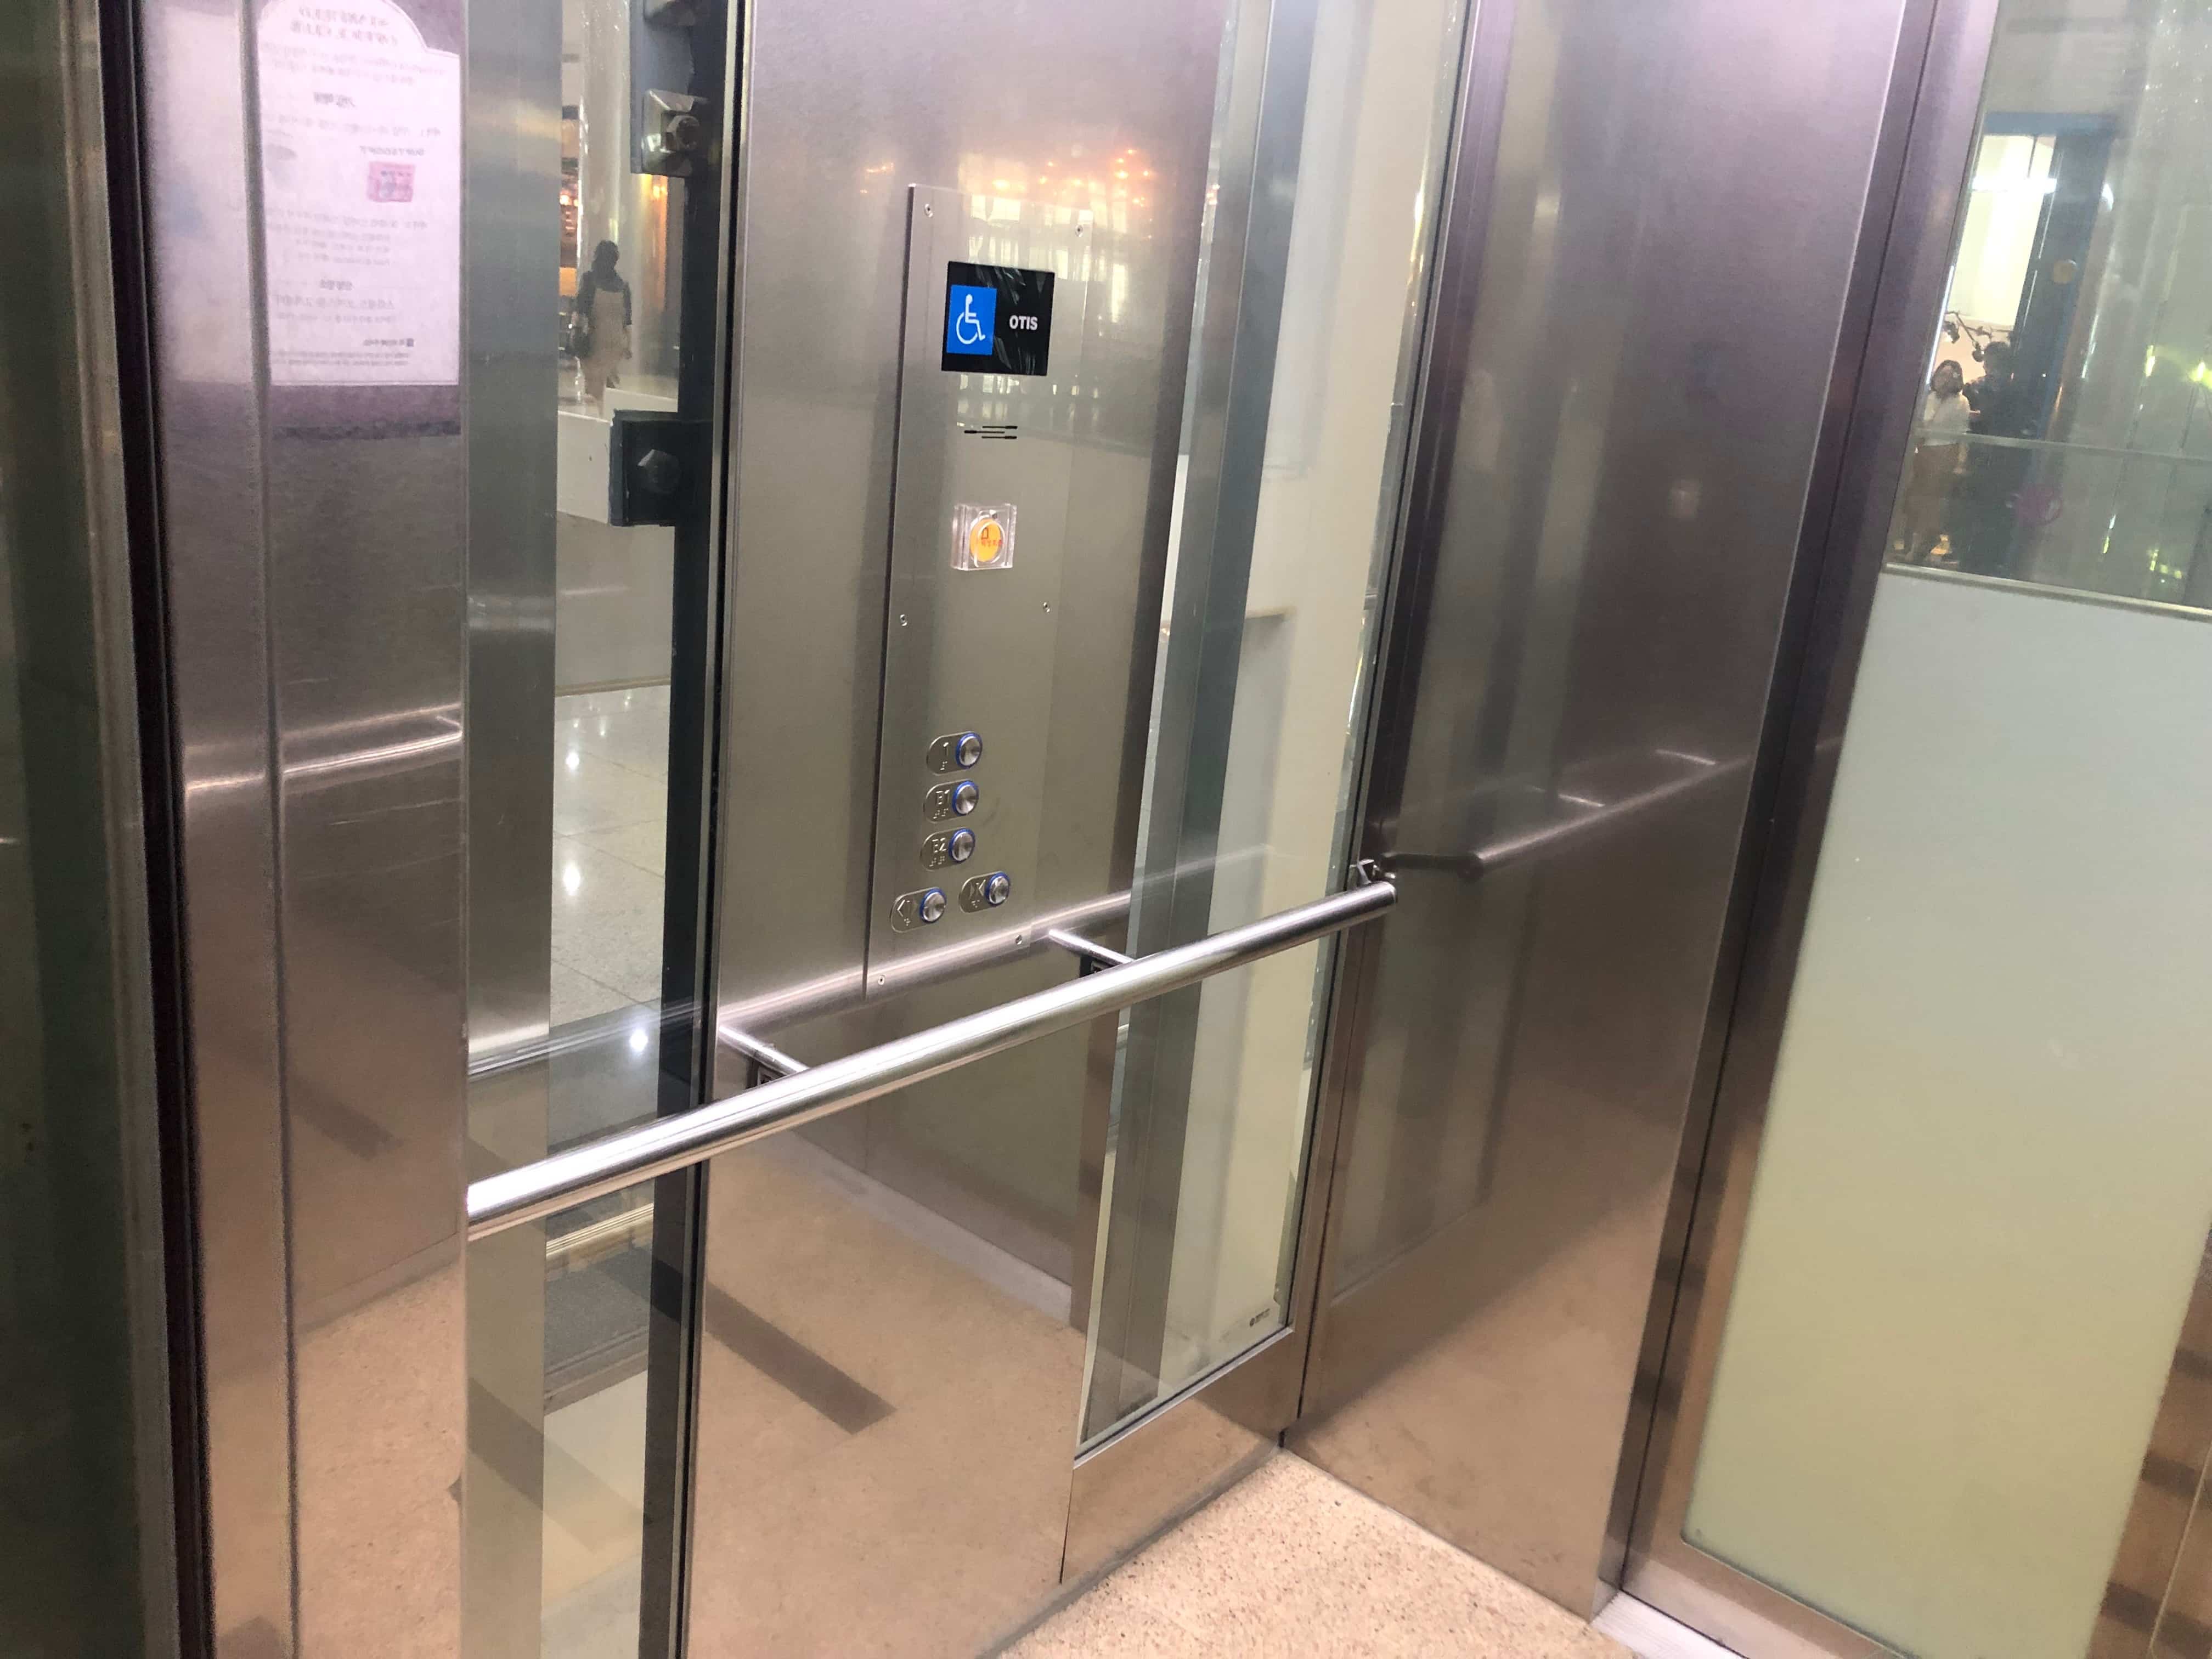 엘리베이터1 : 코엑스 엘리베이터 사진입니다.